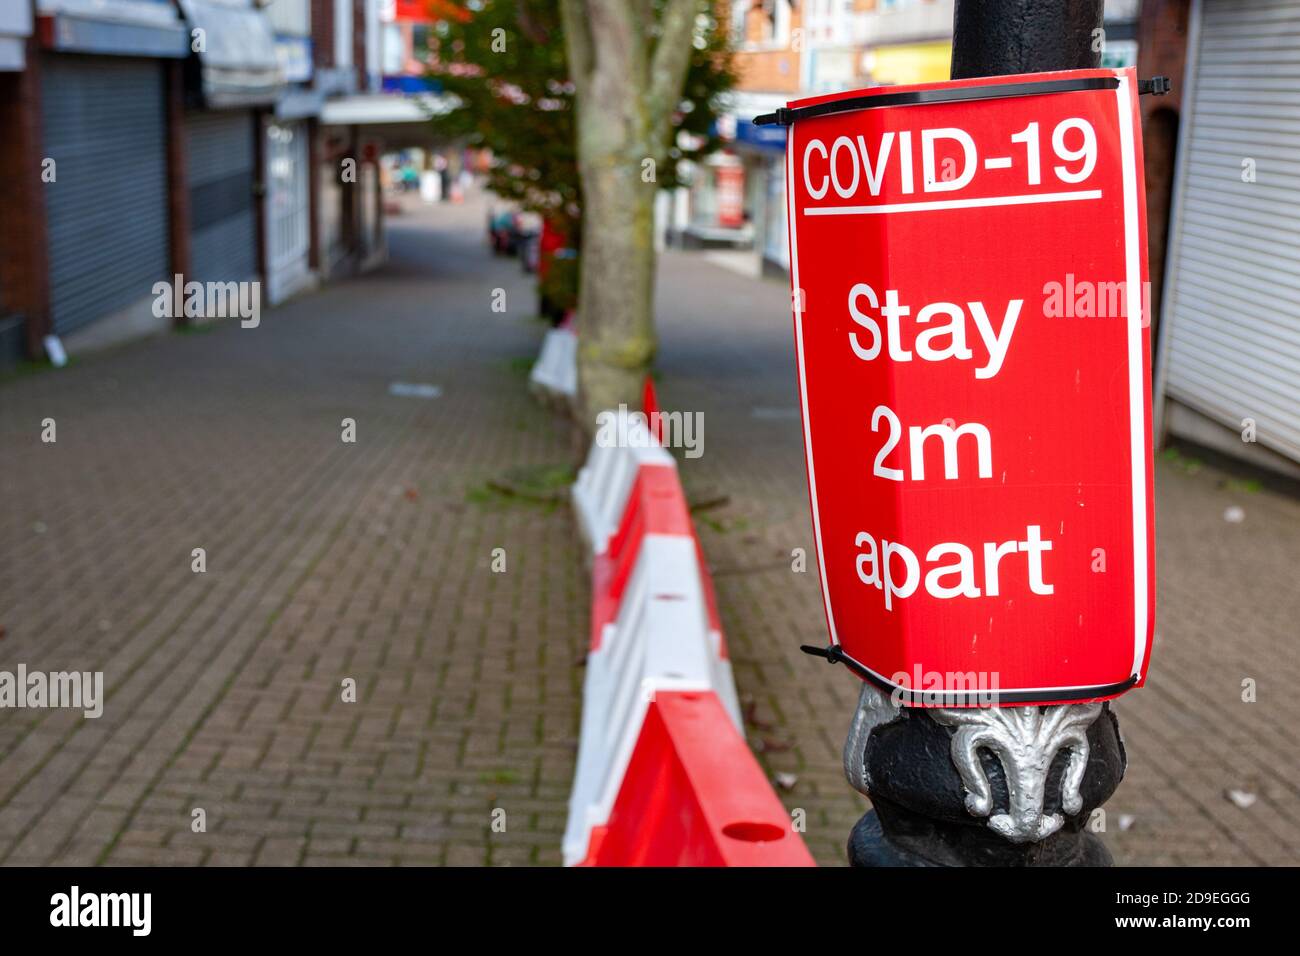 Fußgänger-Zeichen für soziale Distanzierung während der Covid-Pandemie 19, Großbritannien Stockfoto